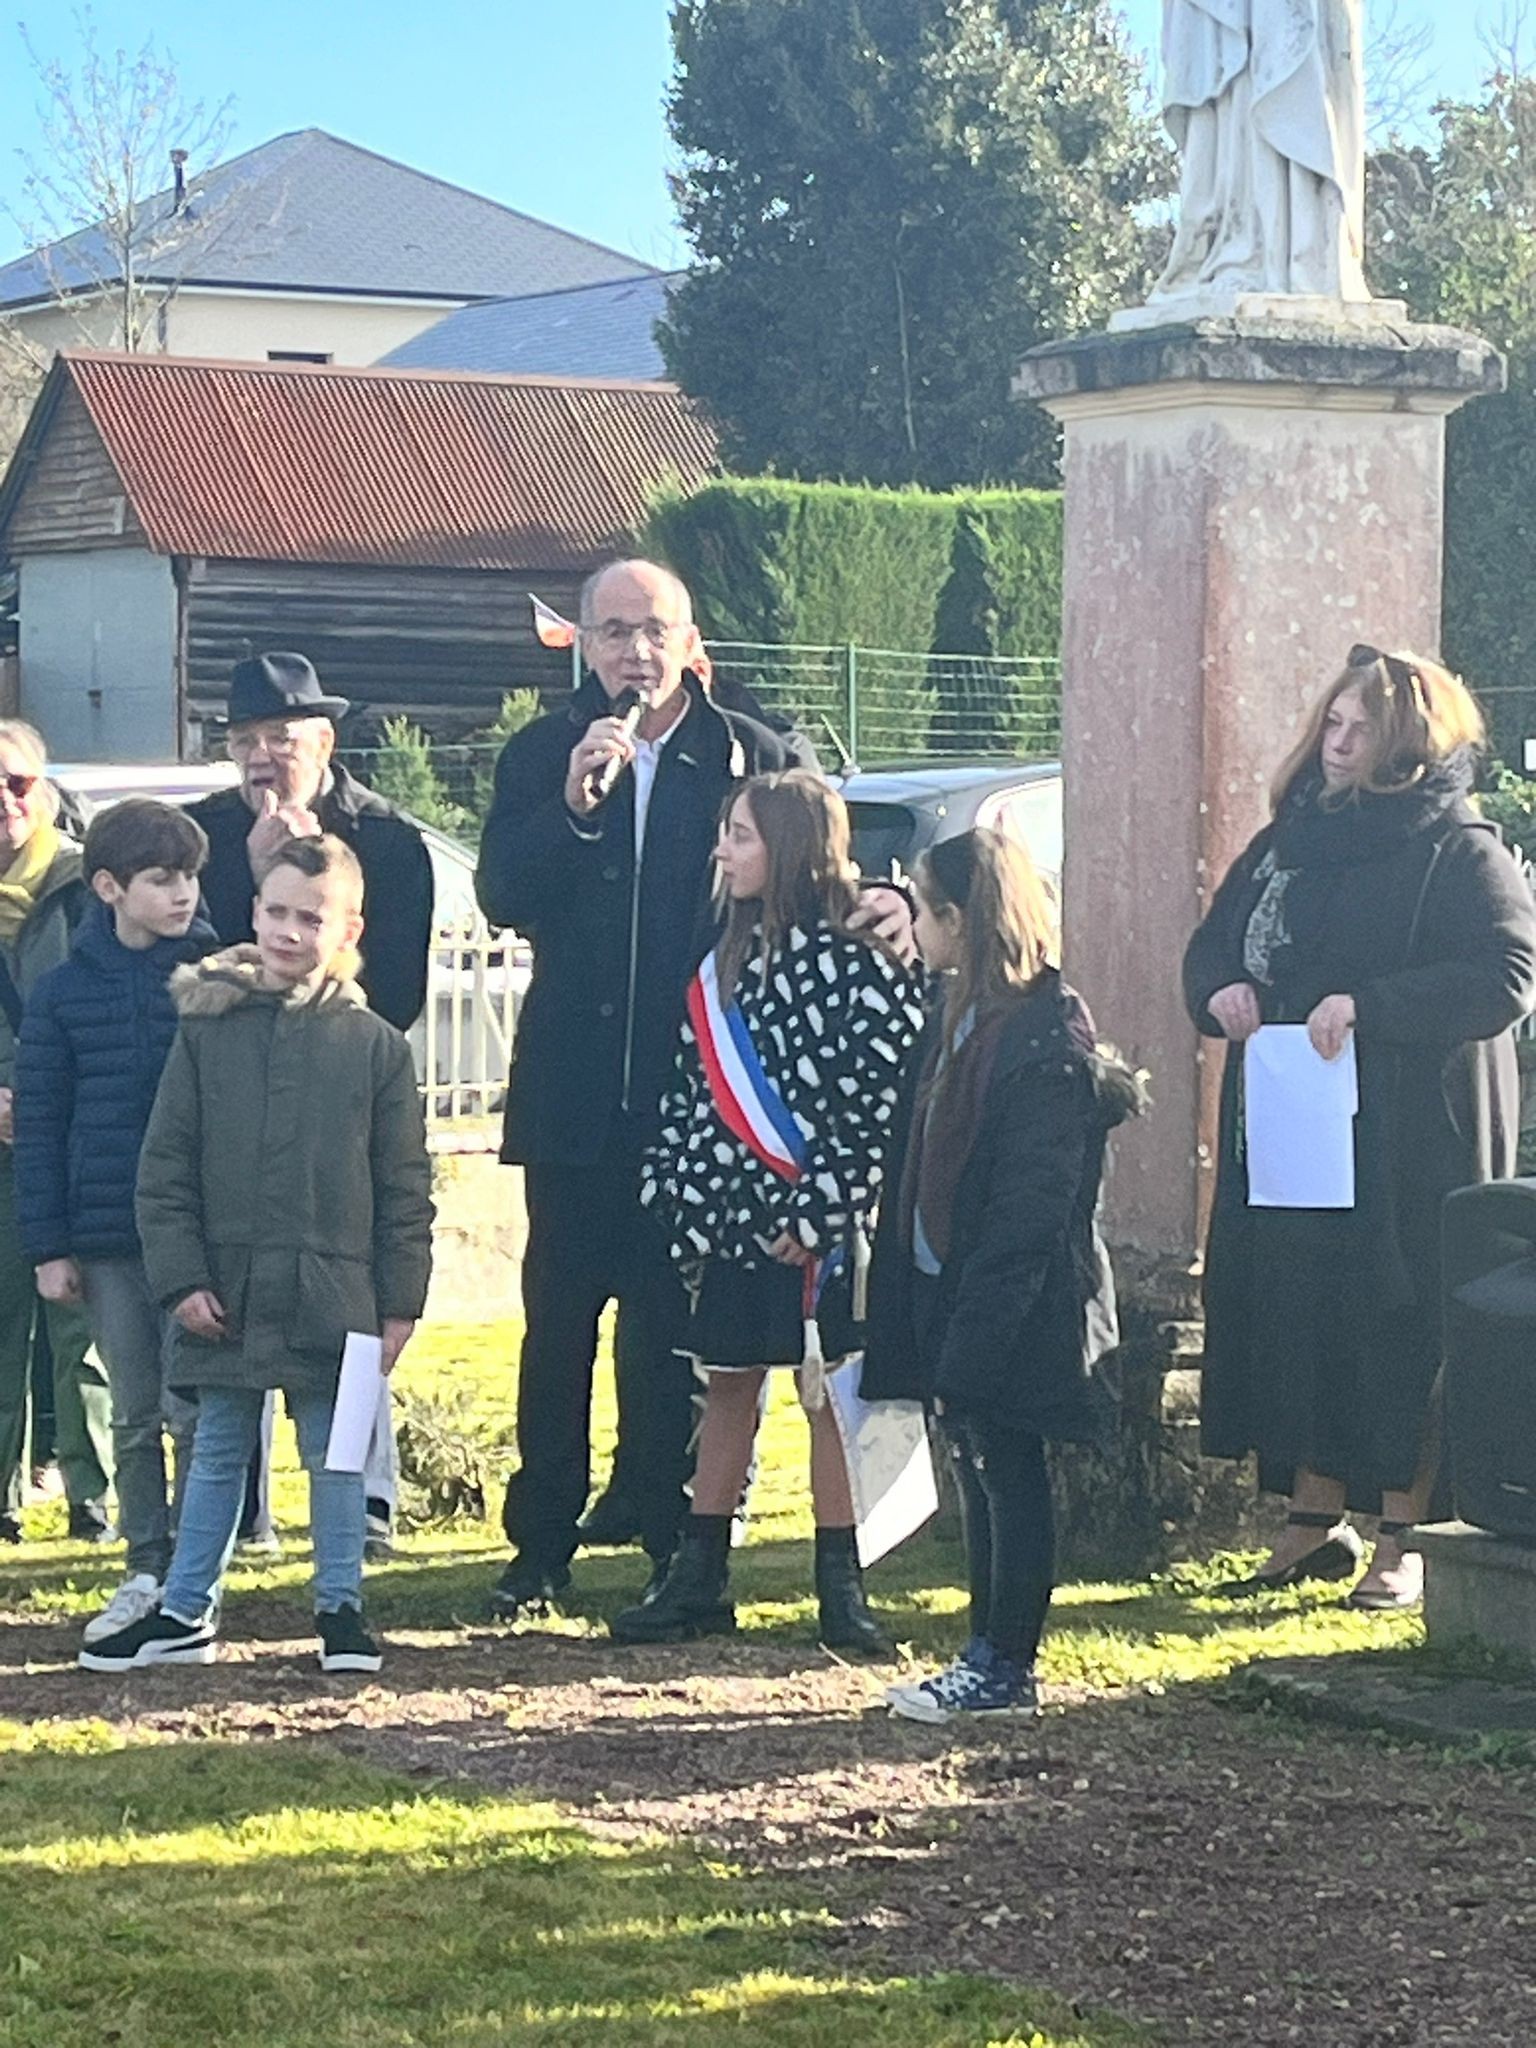 Présentation de la maire des enfants de Val D'Arry par monsieur le maire